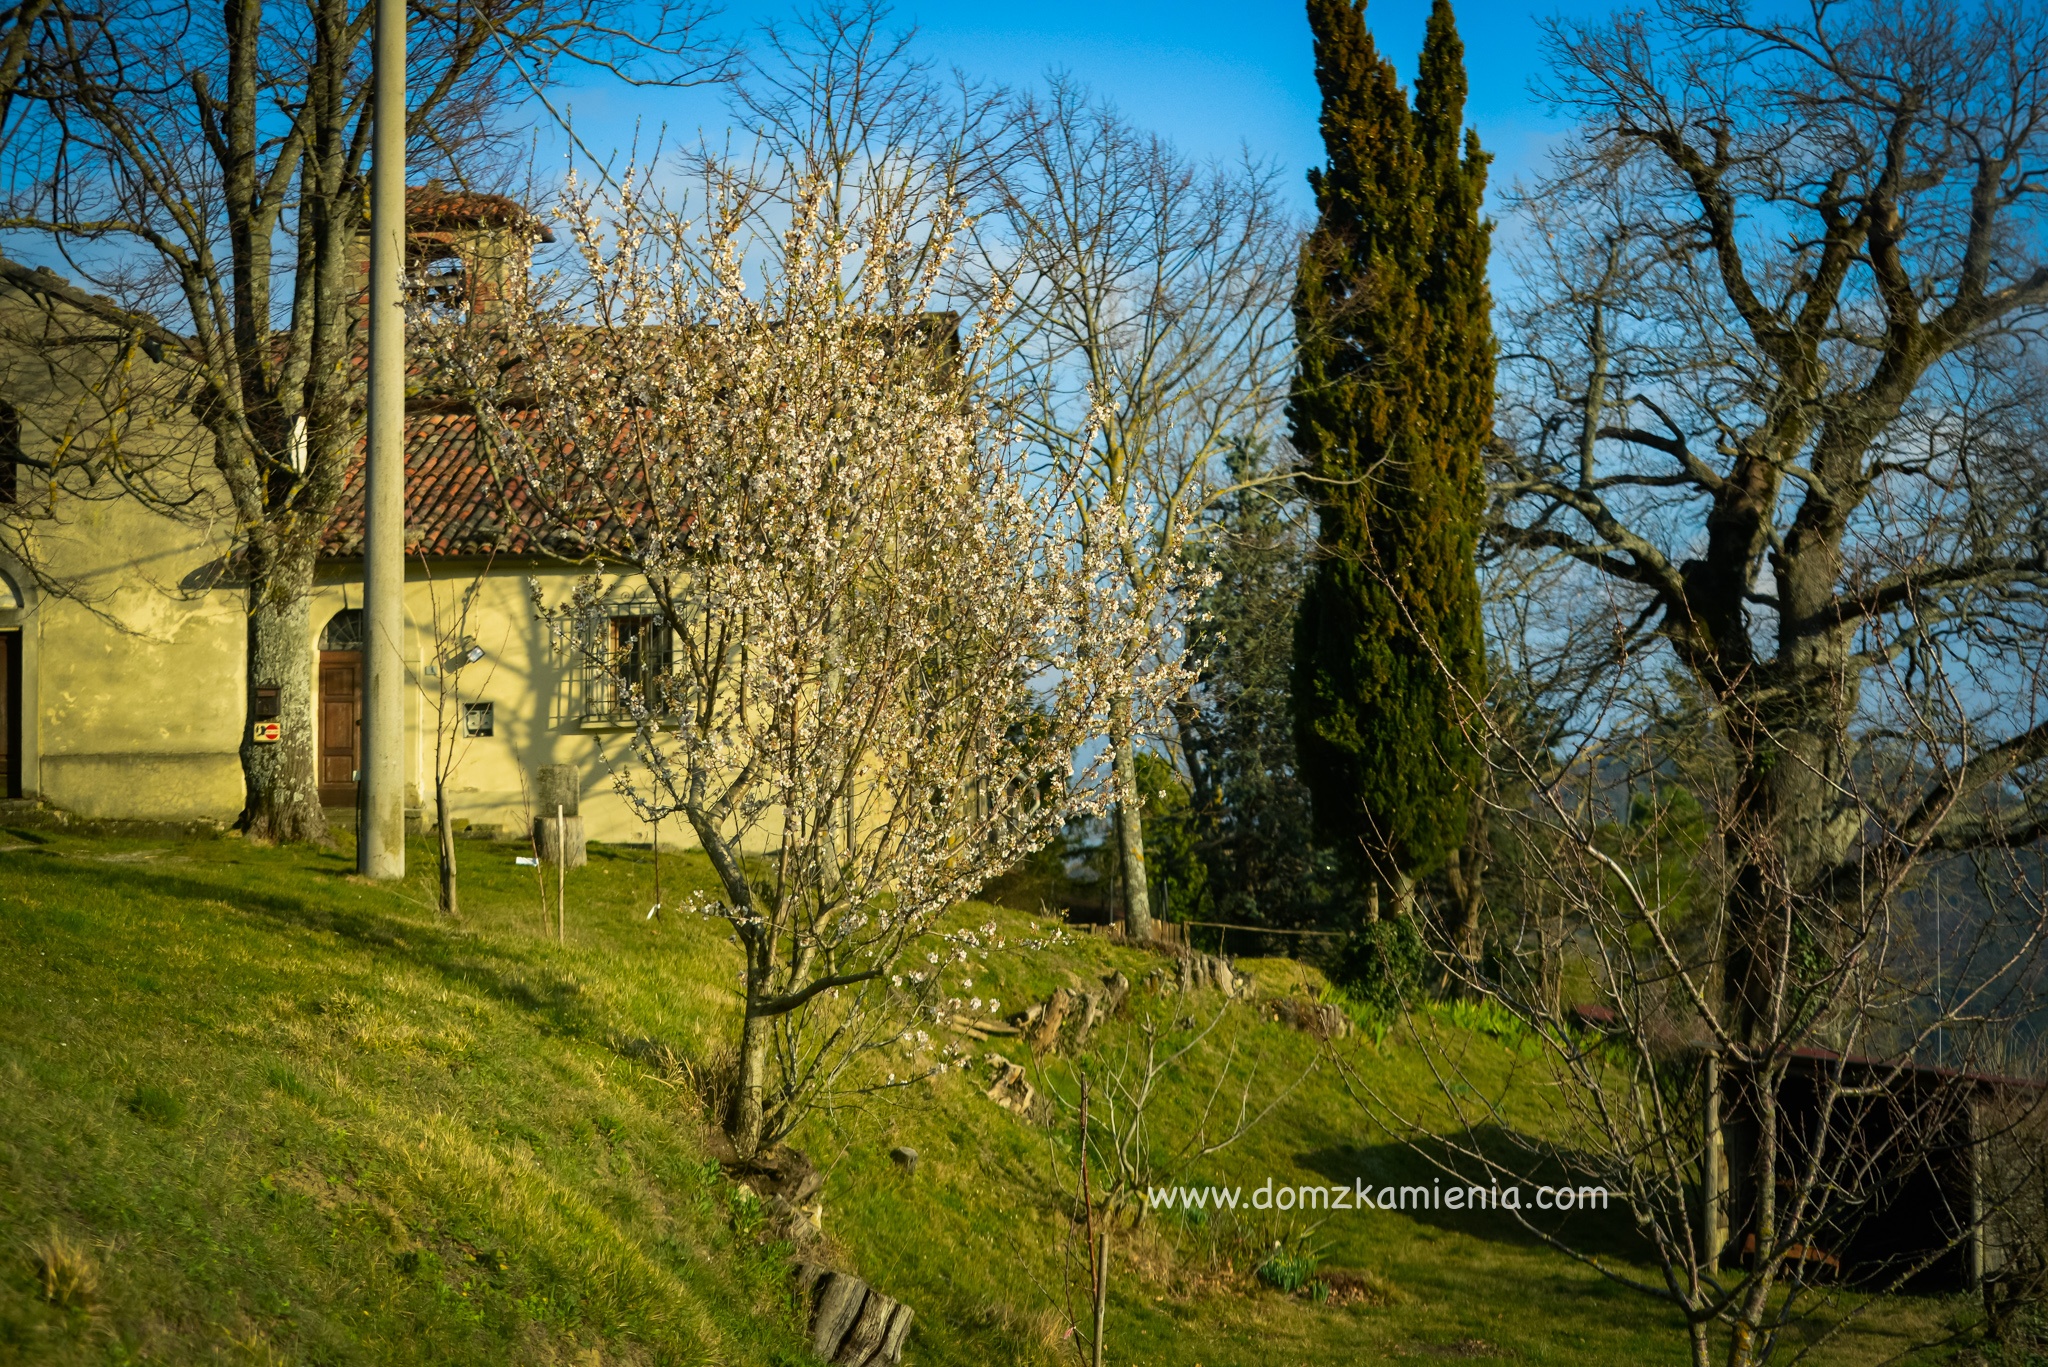 Dom z Kamienia blog, Gamberaldi, Nieznana Toskania